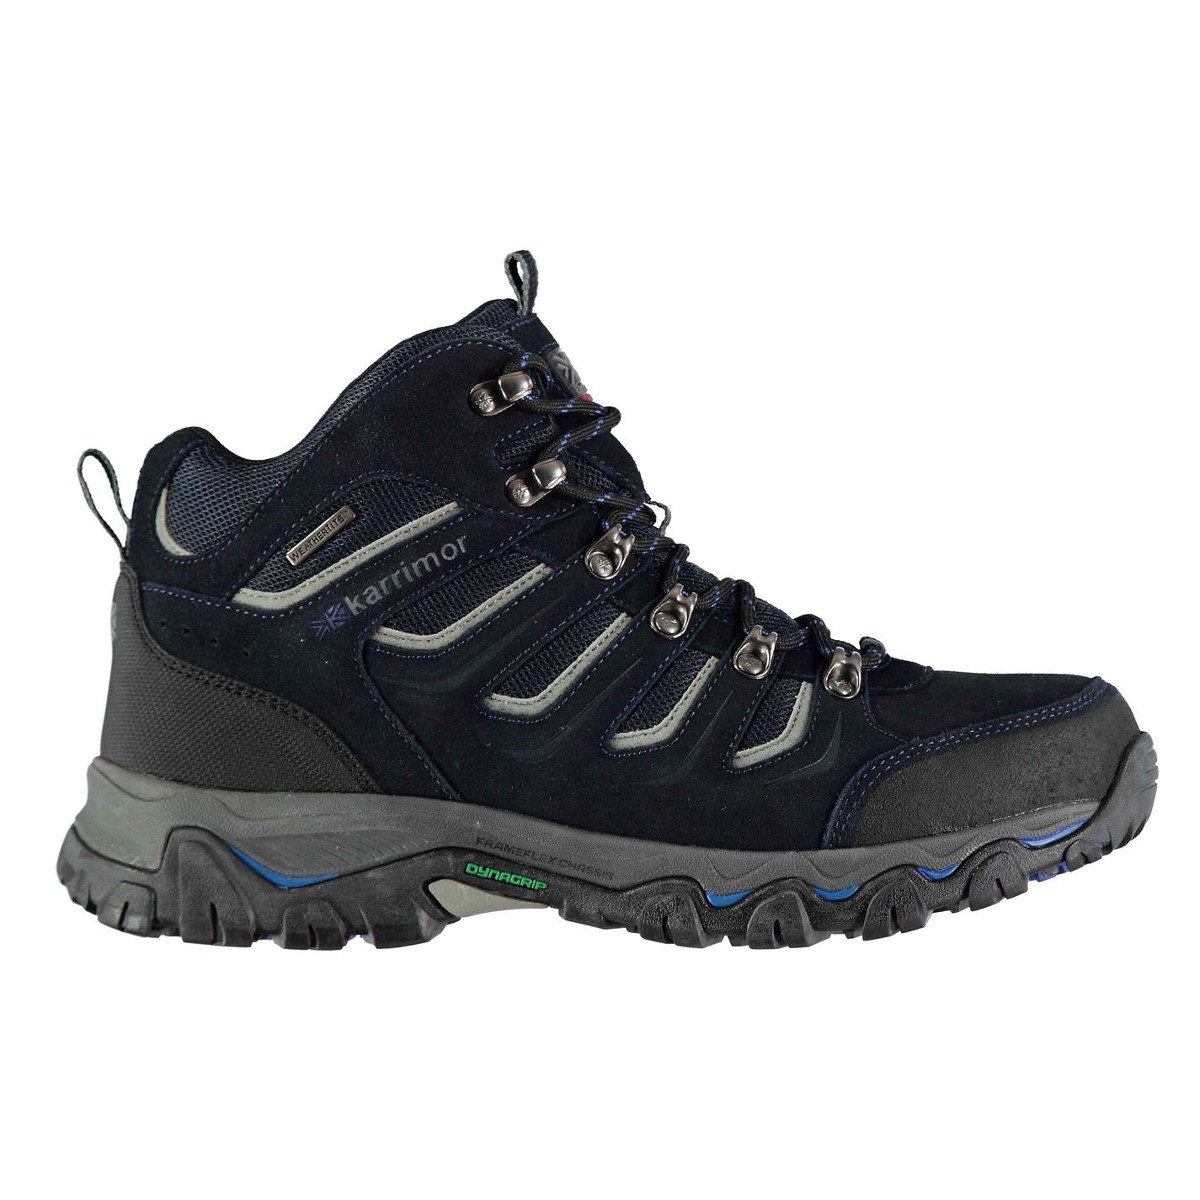 Karrimor Men's Mount Mid Waterproof Hiking Boots - Blue, 11.5